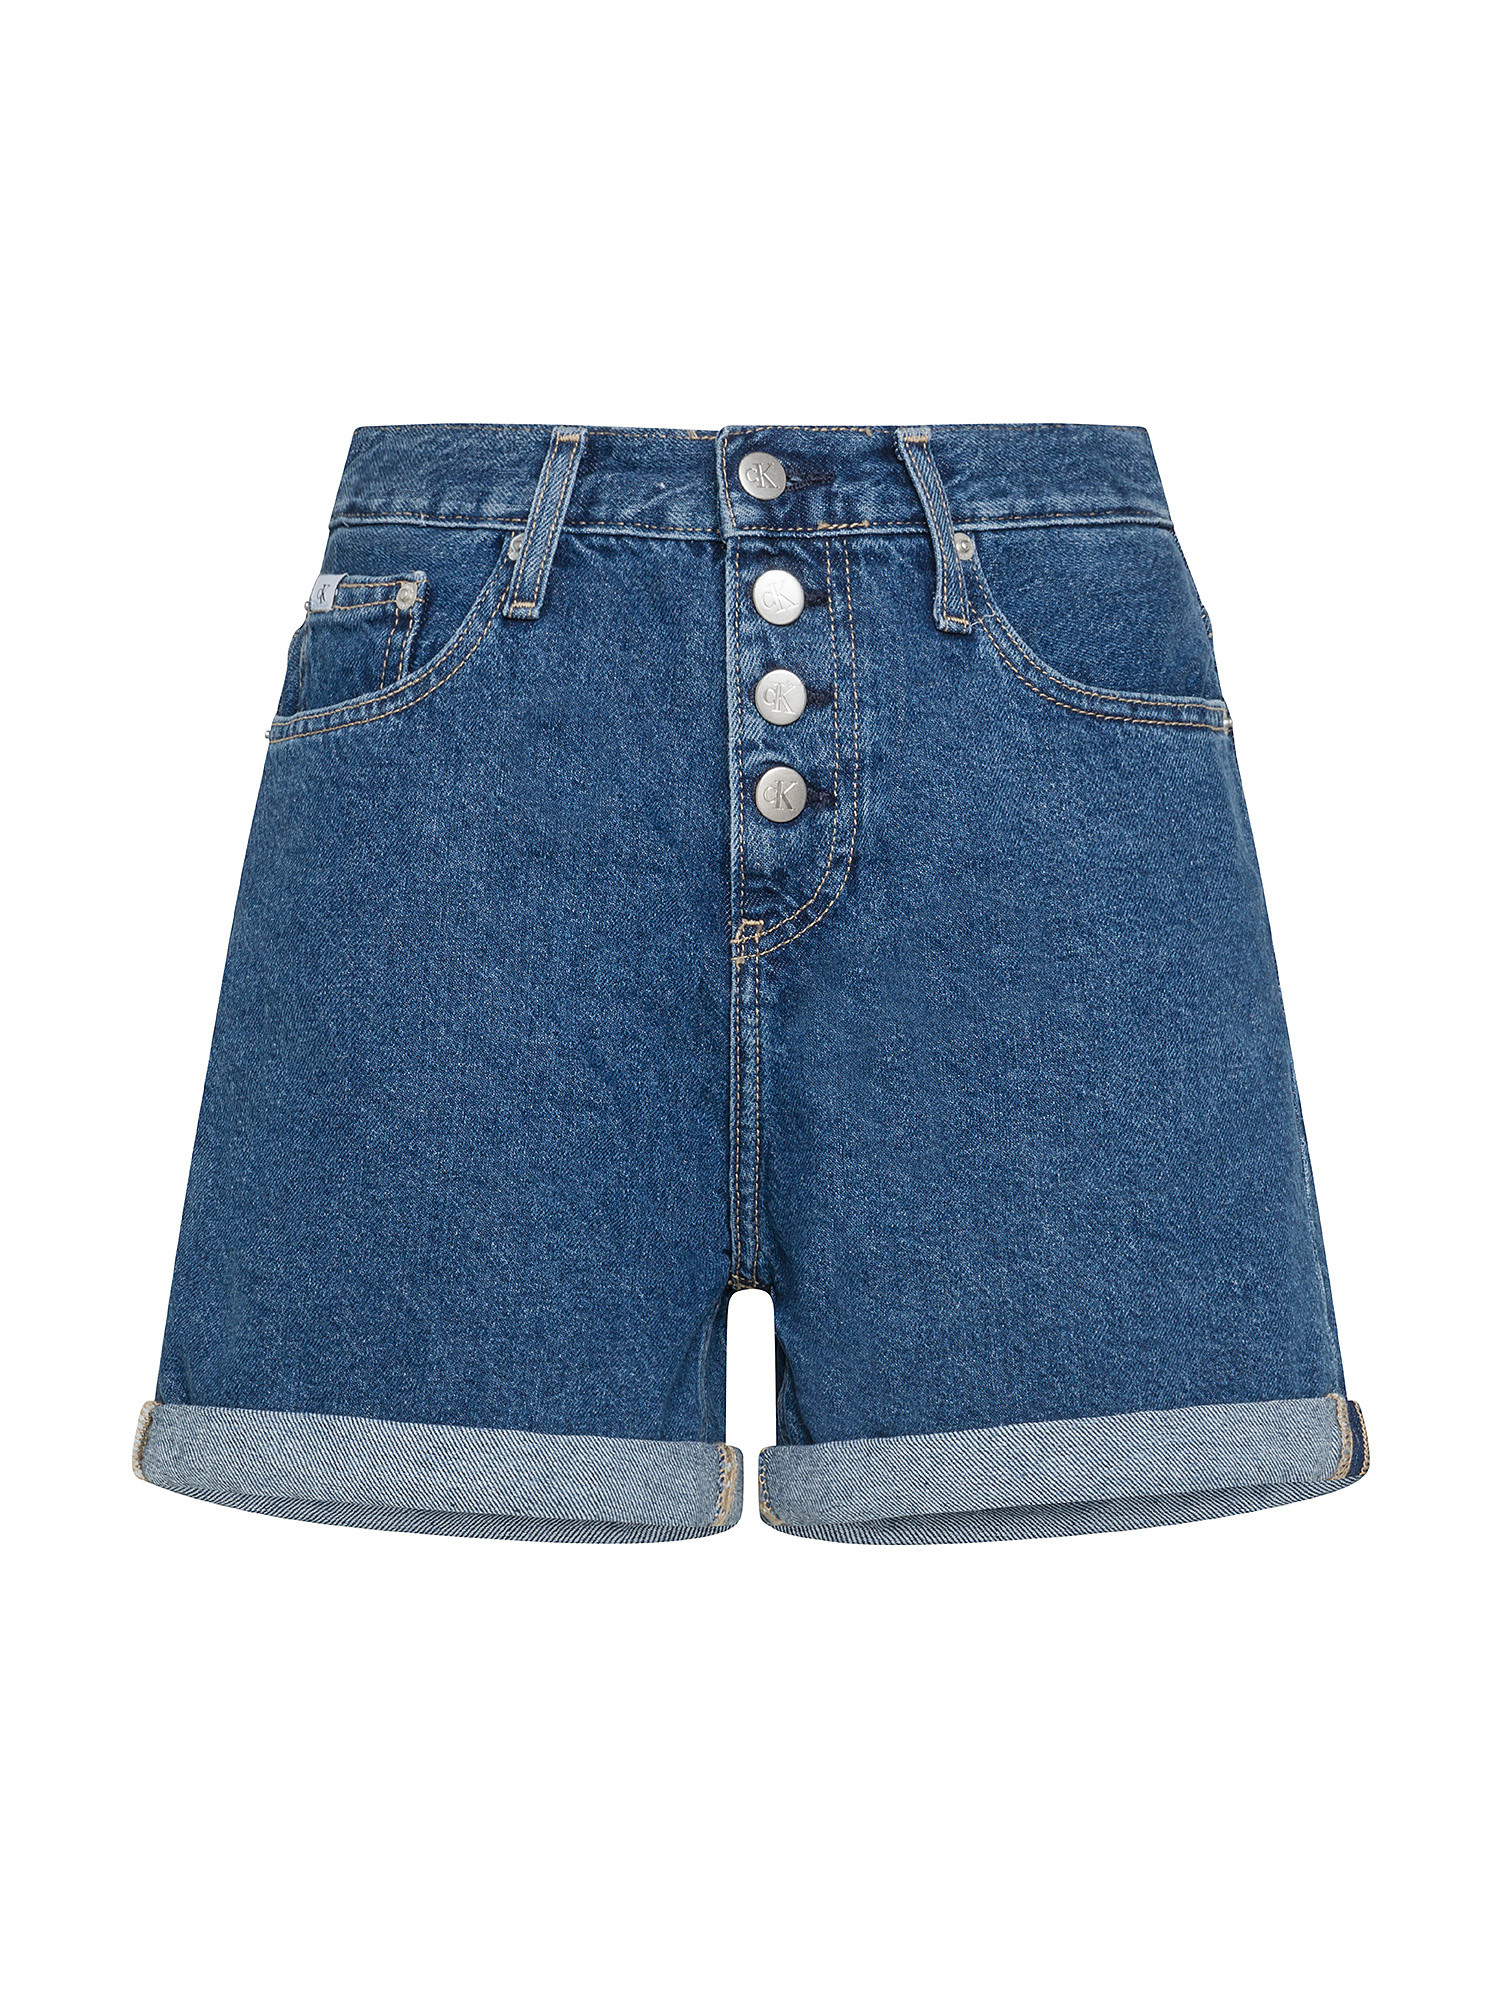 Calvin Klein Jeans - Mom fit denim shorts, Denim, large image number 0